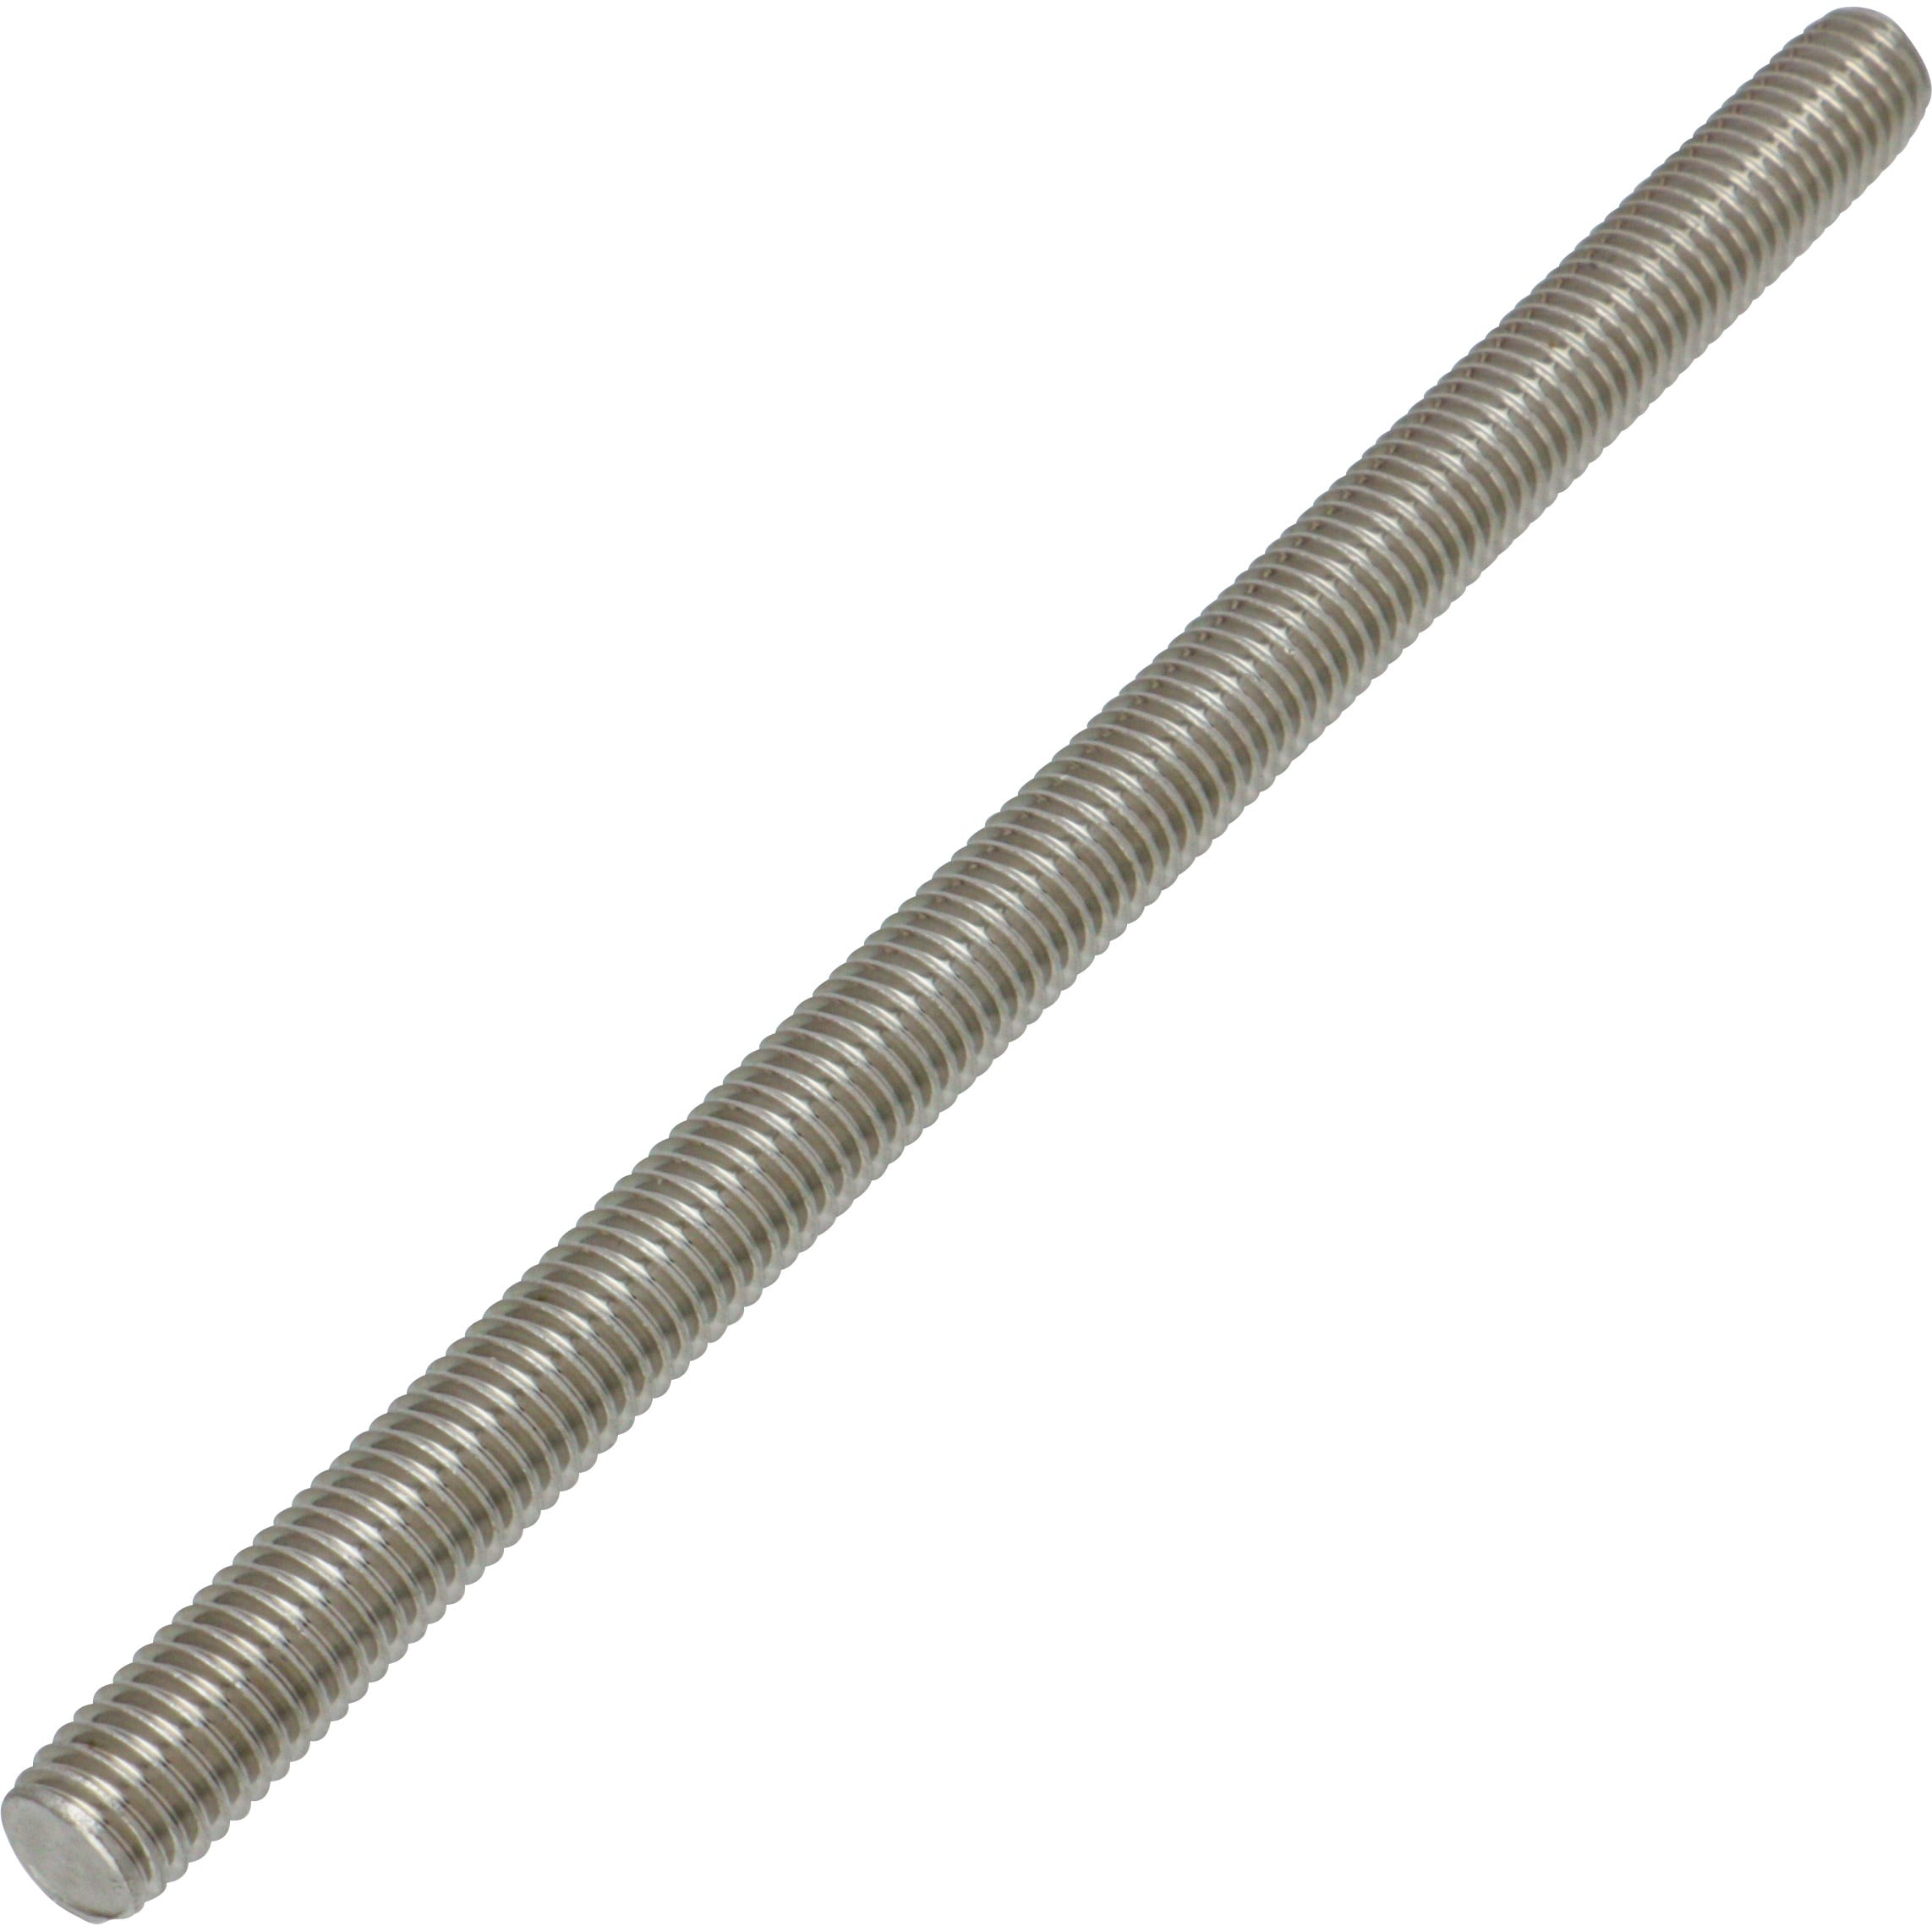 鉄 寸切(荒先) M12x330 生地 - ネジ・釘・金属素材